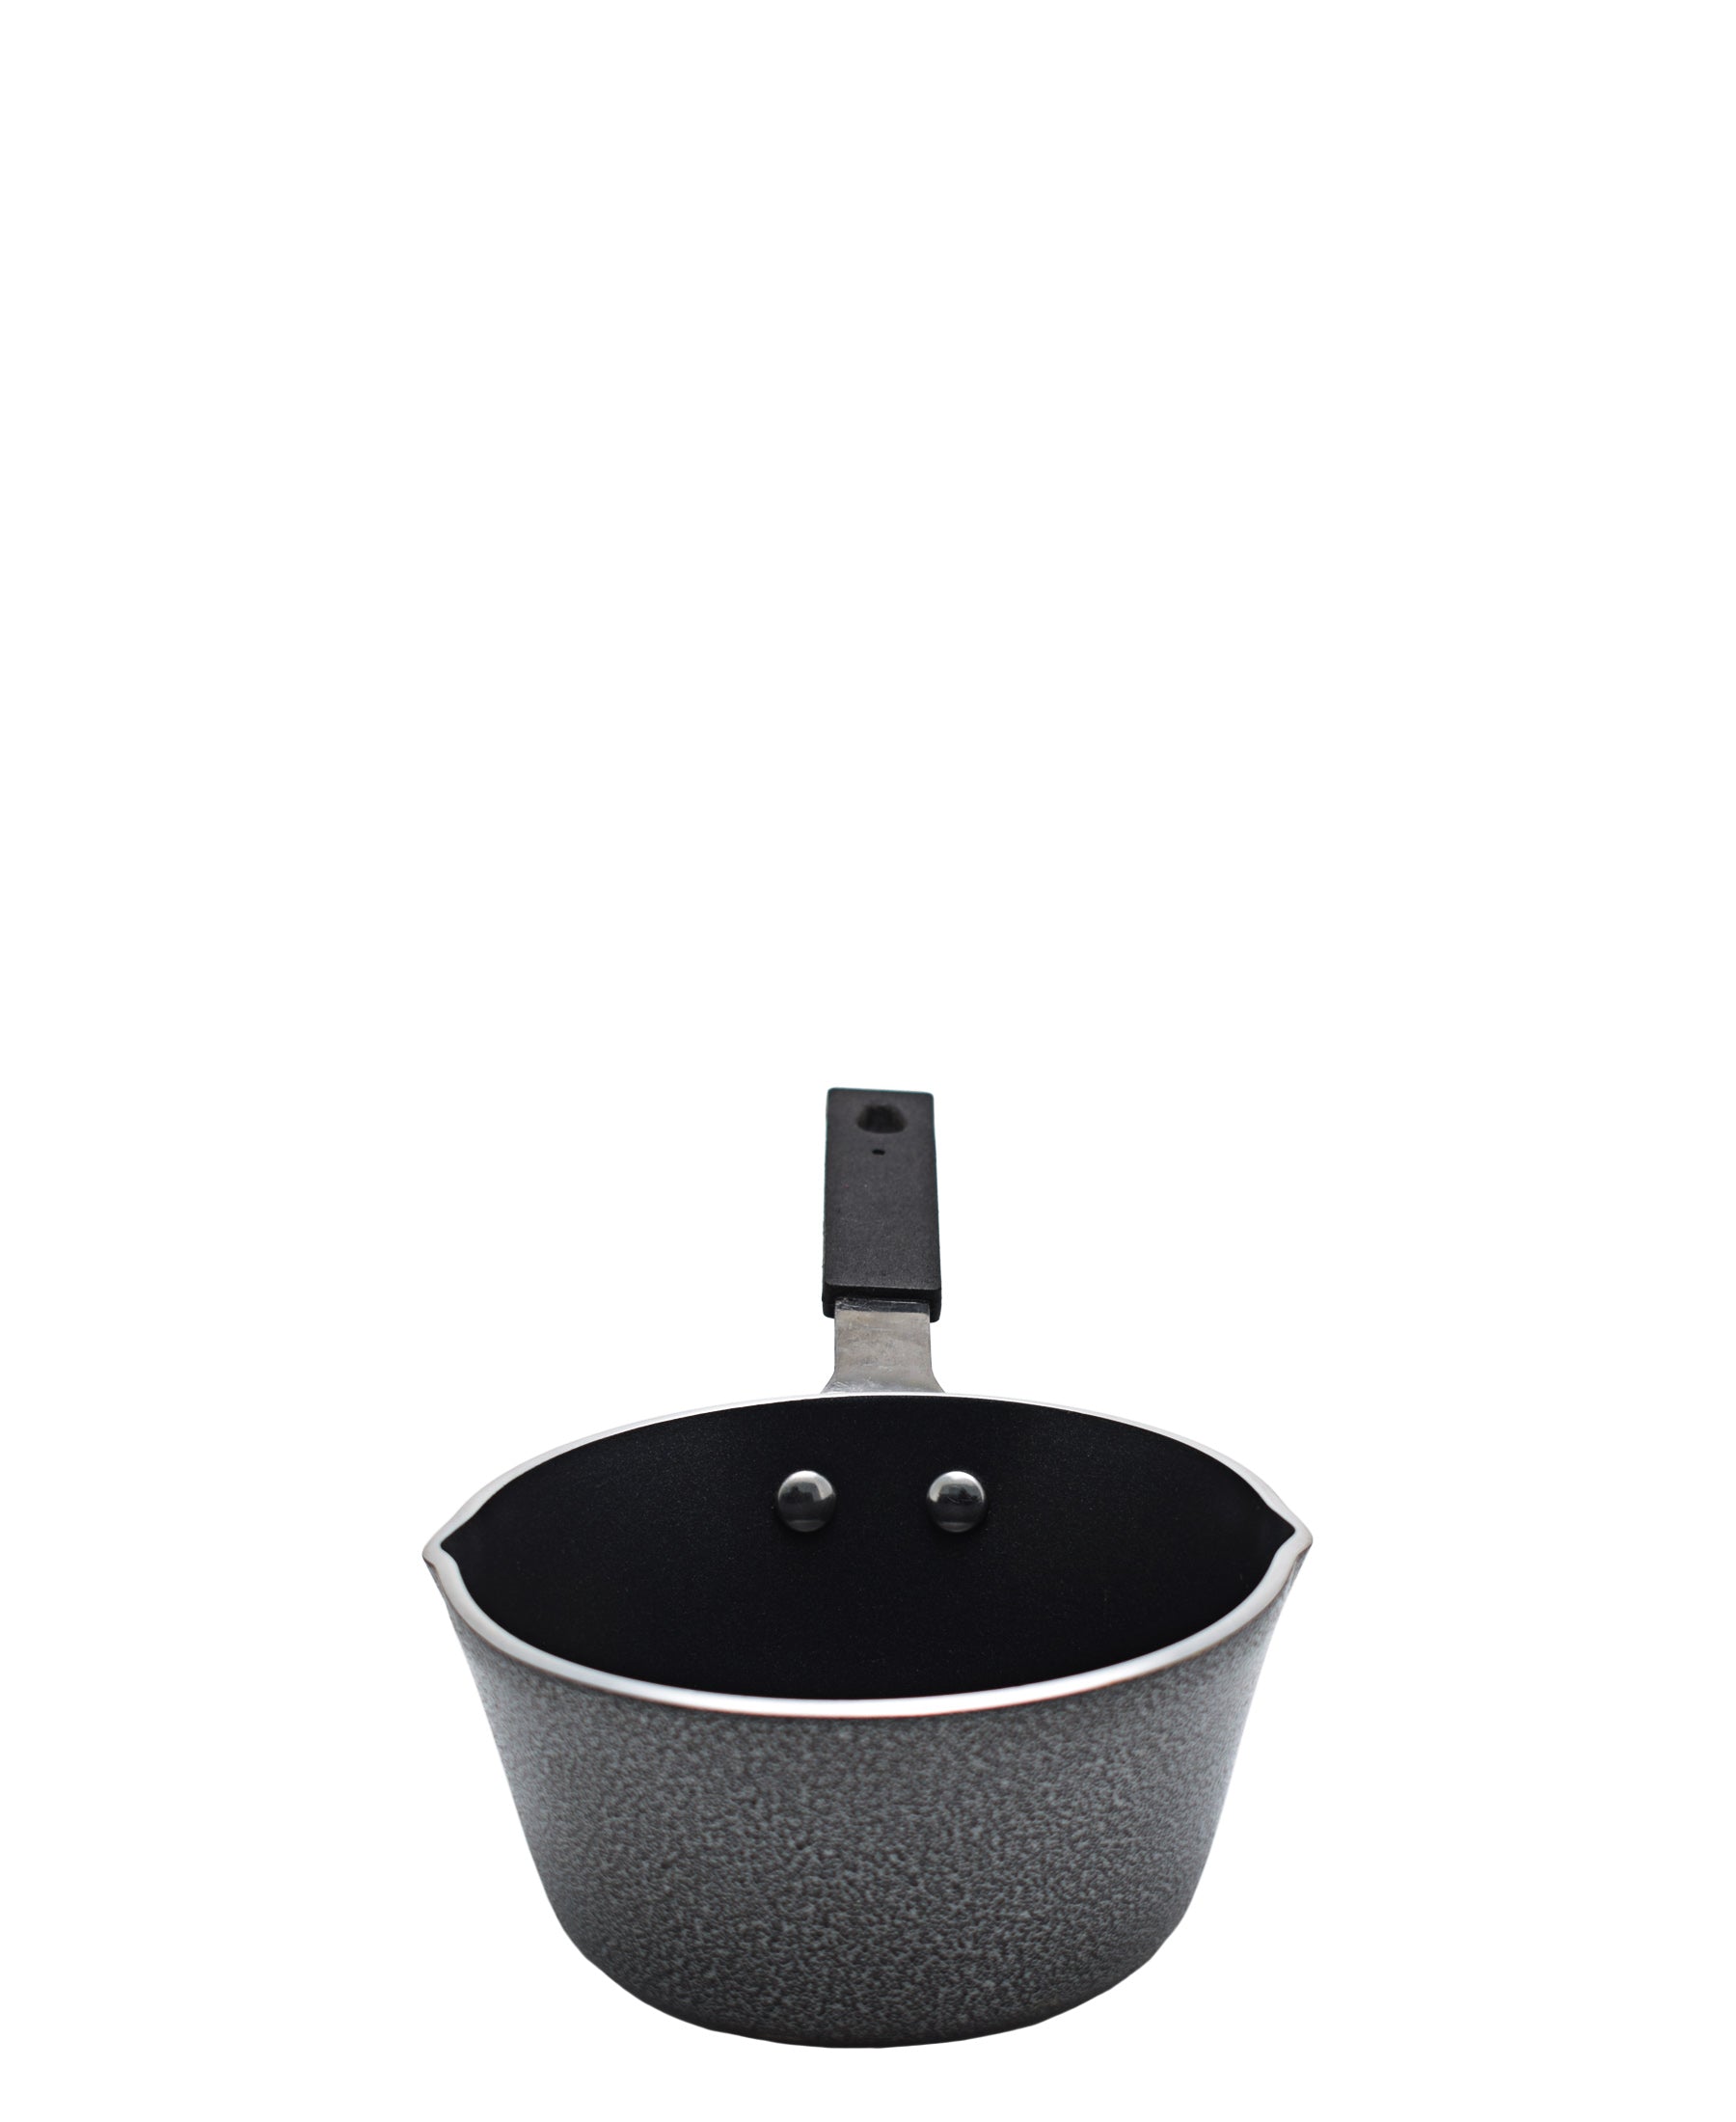 Casio Milk Pot 13cm - Black